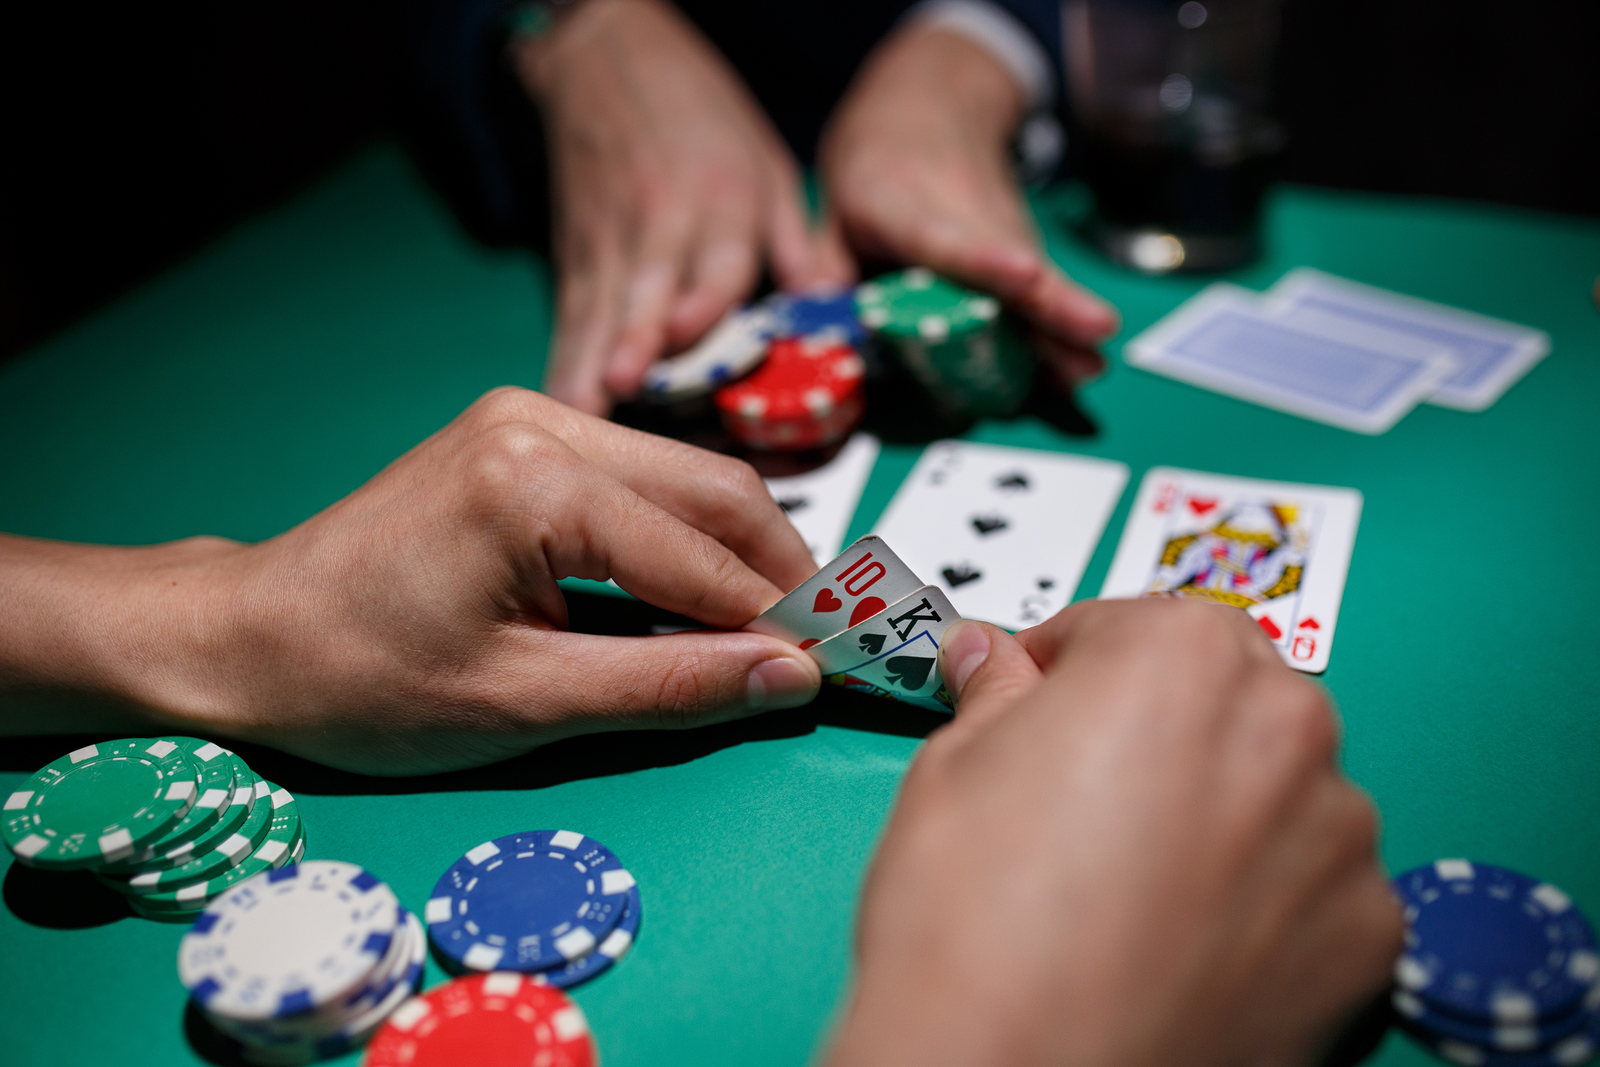 commerce casino poker tournaments